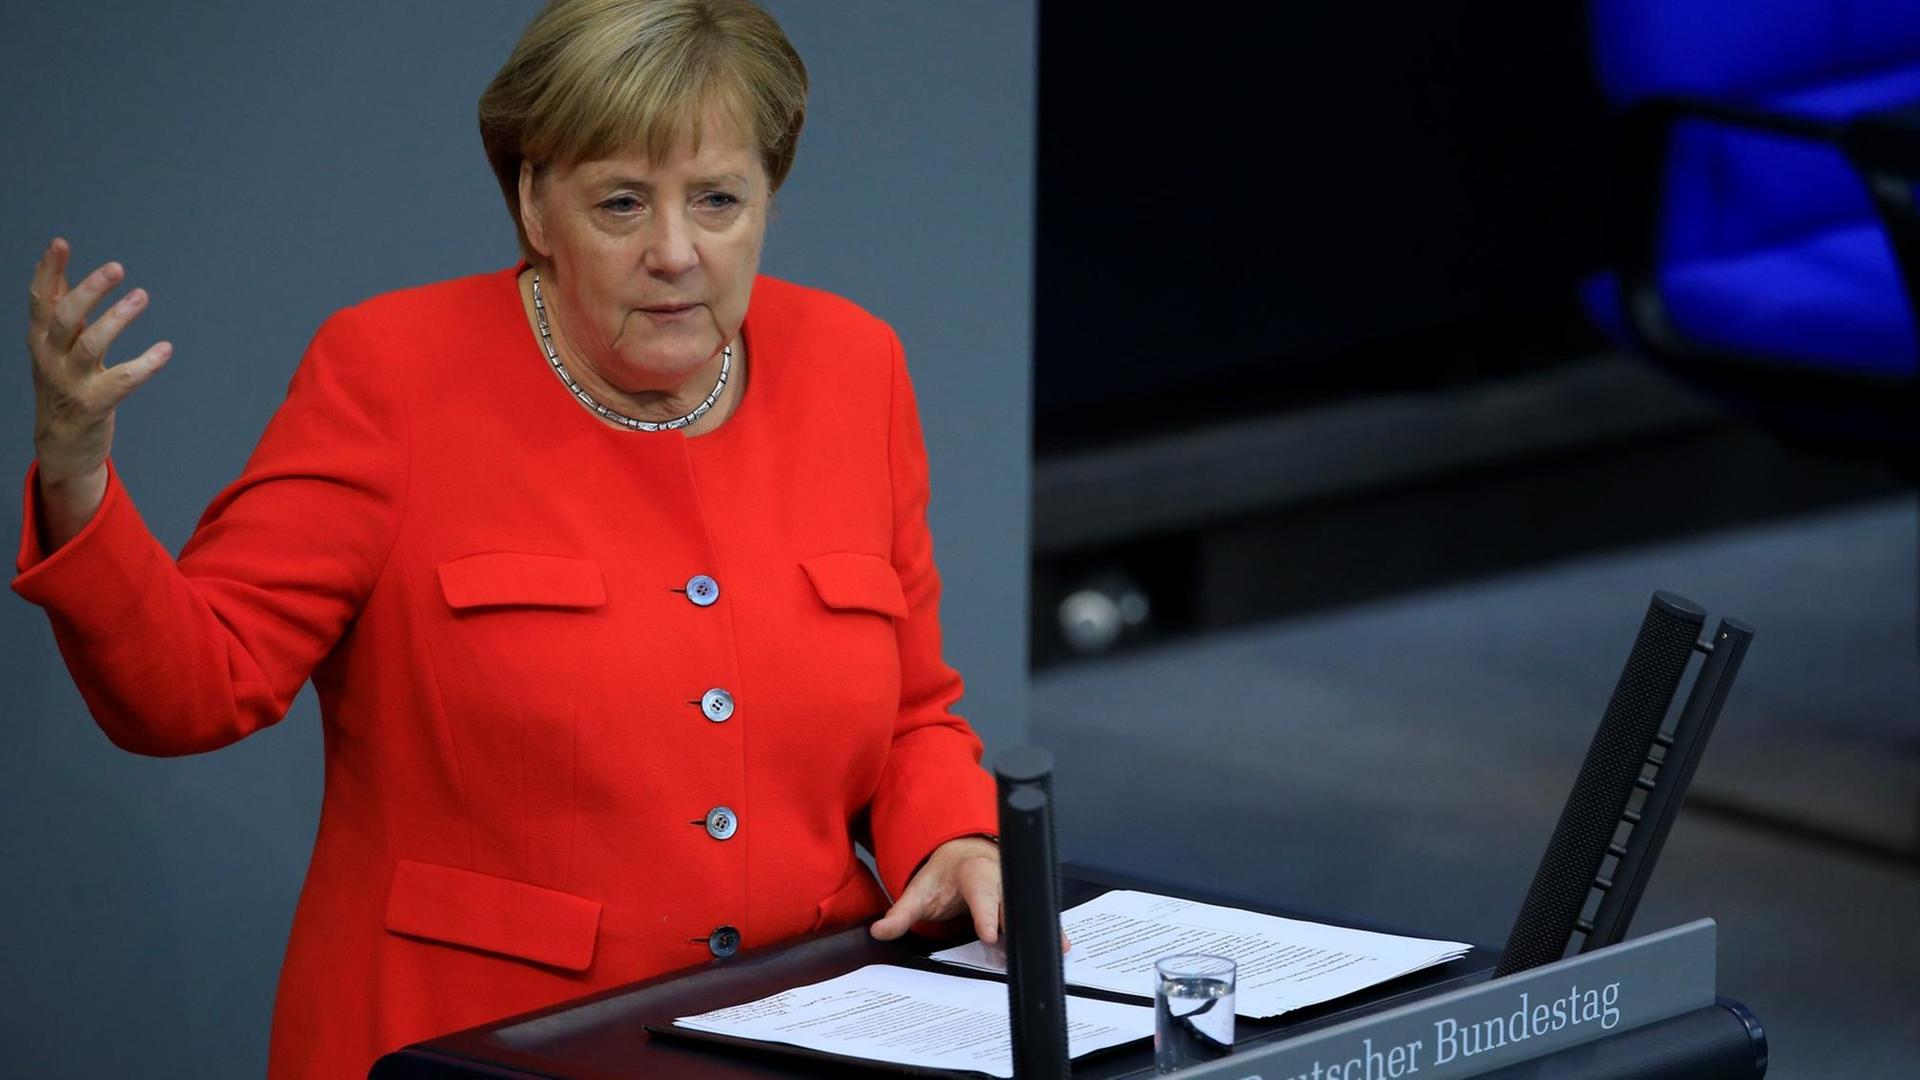 Angela Merkel spricht am Rednerpult des Deutschen Bundestages. Sie trägt eine rote Jacke, die linke Hand berührt das Rednerpult, die rechte hält sie angewinkelt bis in Schulterhöhe in die Luft.